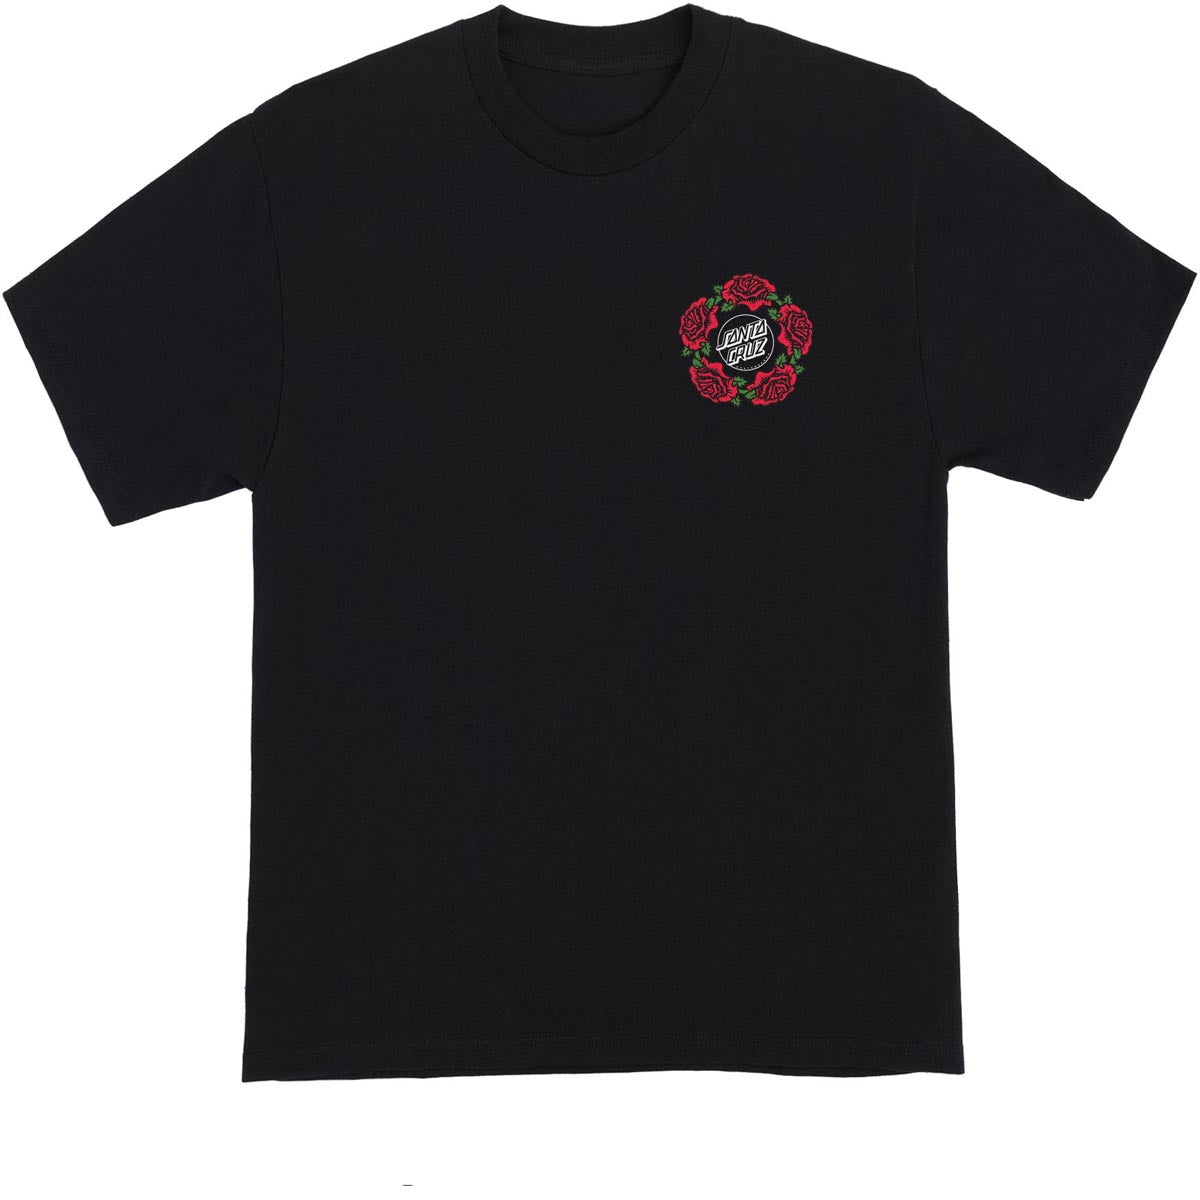 Santa Cruz Dressen Mash Up T-Shirt - Black image 2